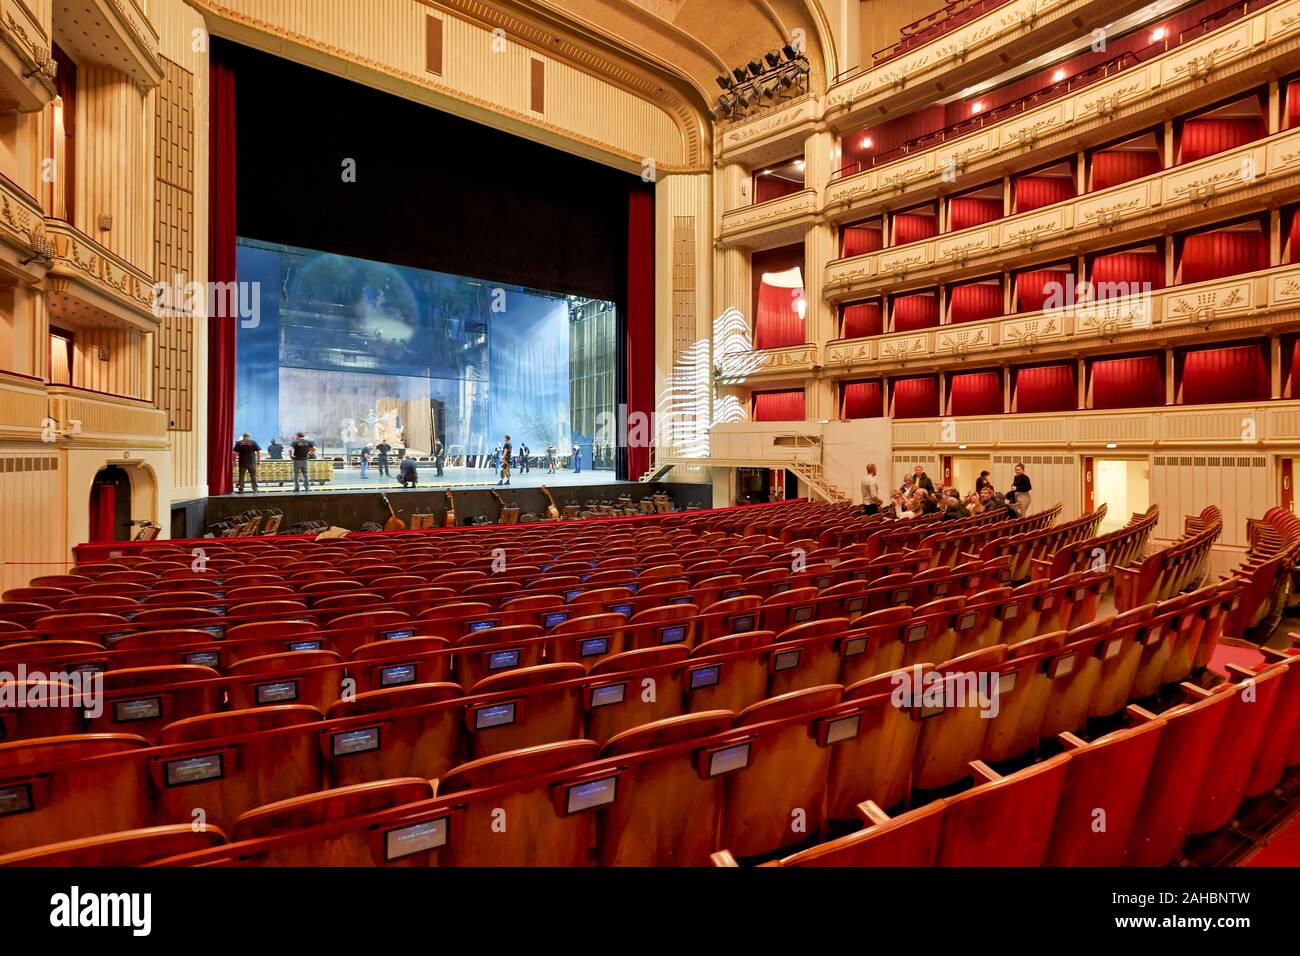 L'Opéra national de Vienne (Wiener Staatsoper)- Vienne Autriche Banque D'Images